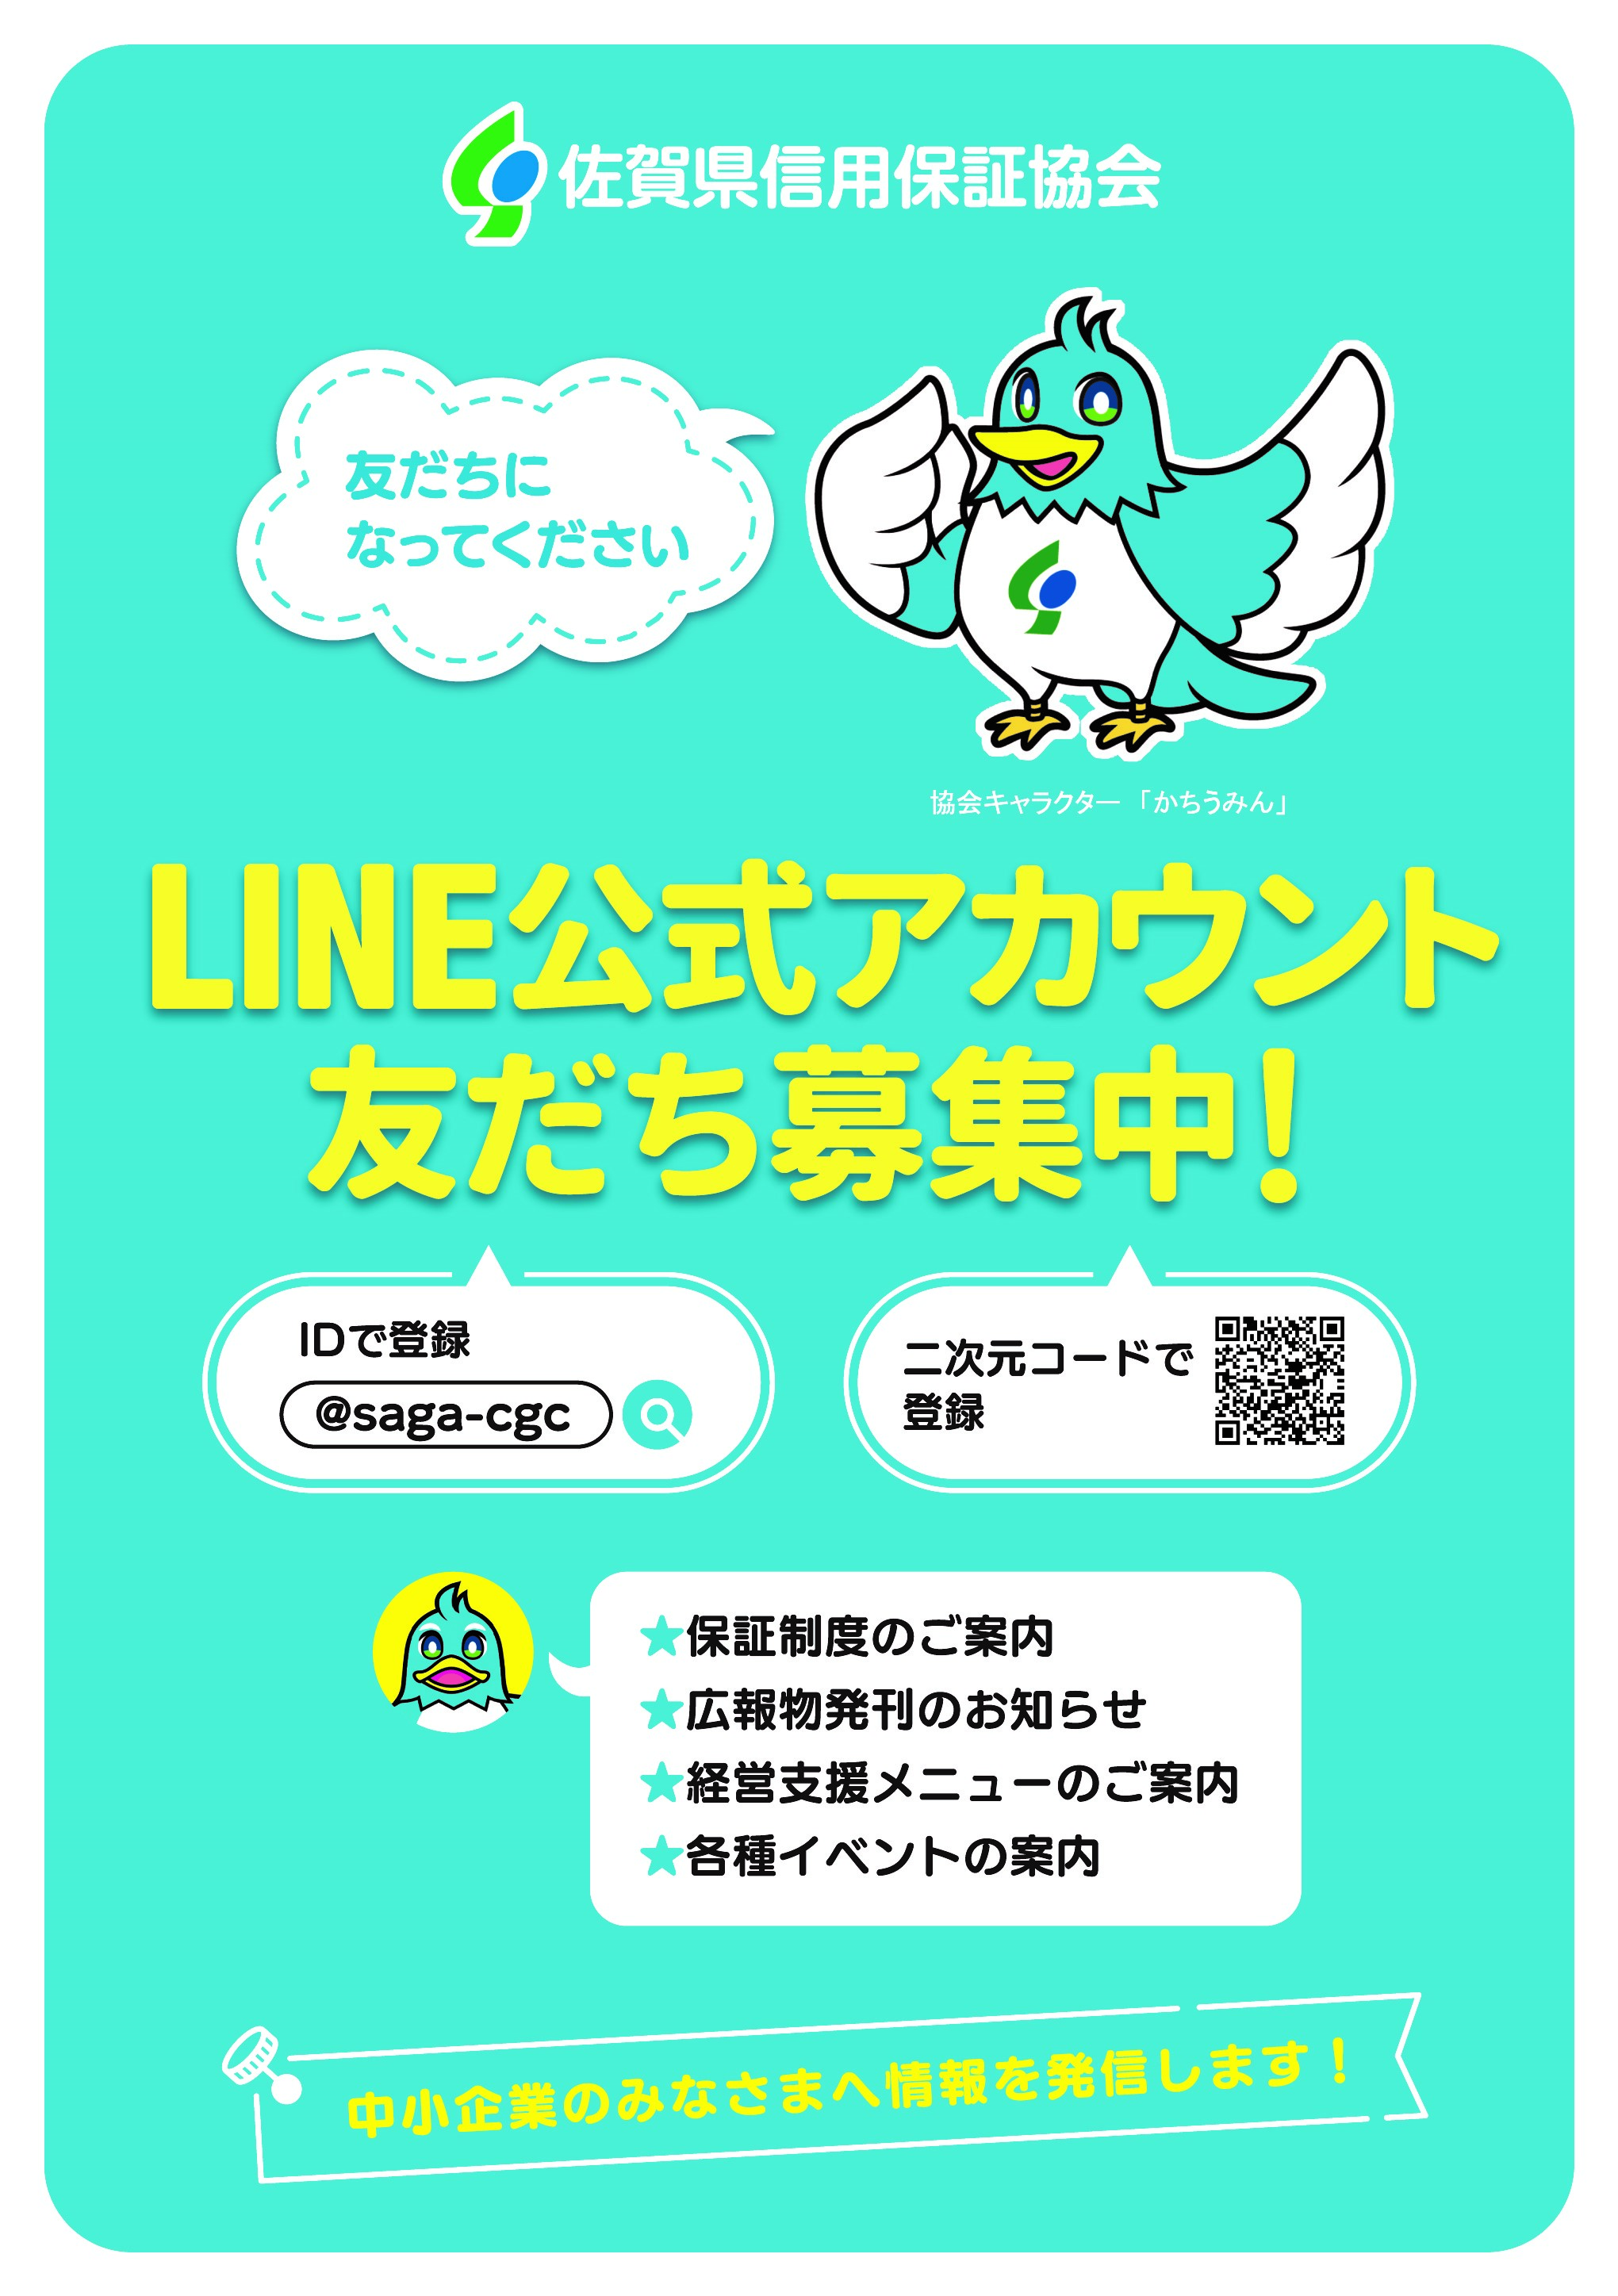 佐賀県信用保証協会の「LINE公式アカウント」が開設されました